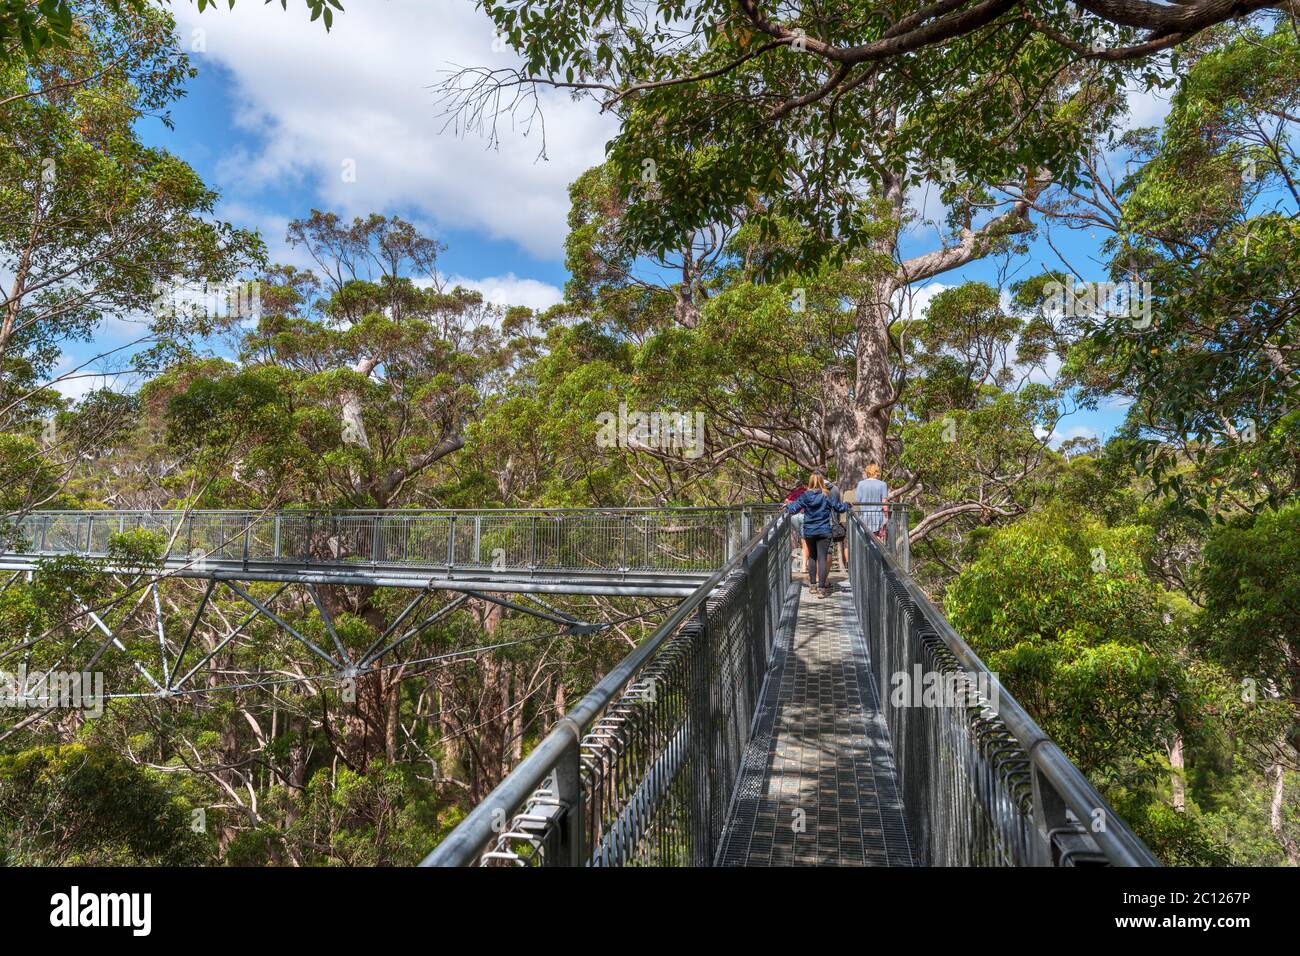 Valley of the Giants Tree Top Walk, parc national de Walpole-Nornalup, près du Danemark, Australie occidentale, Australie Banque D'Images